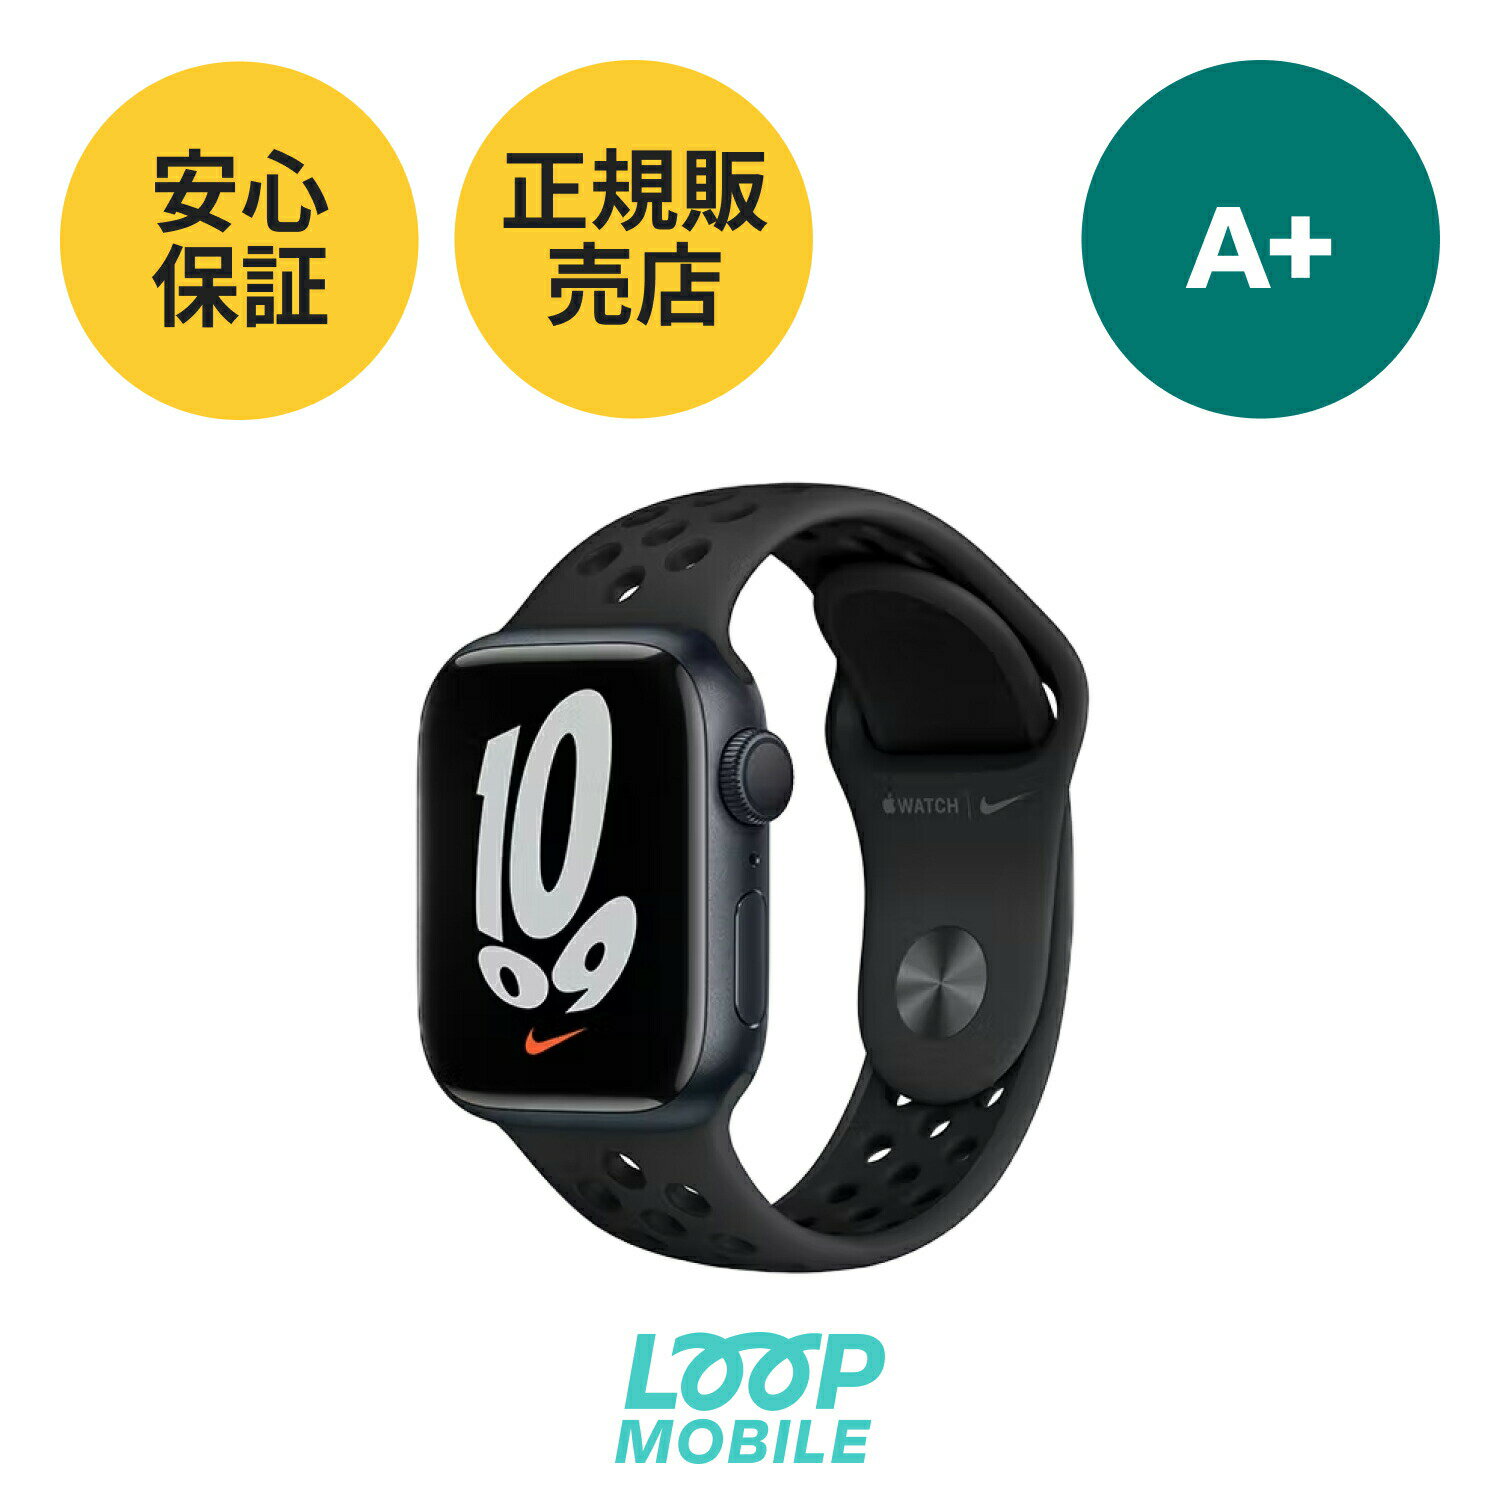 A+ Apple Watch Series NIKE 7 GPSモデル 41mm | Apple認定商品 | アップルウォッチ ナイキ ミッドナイト ブラックバンド付き